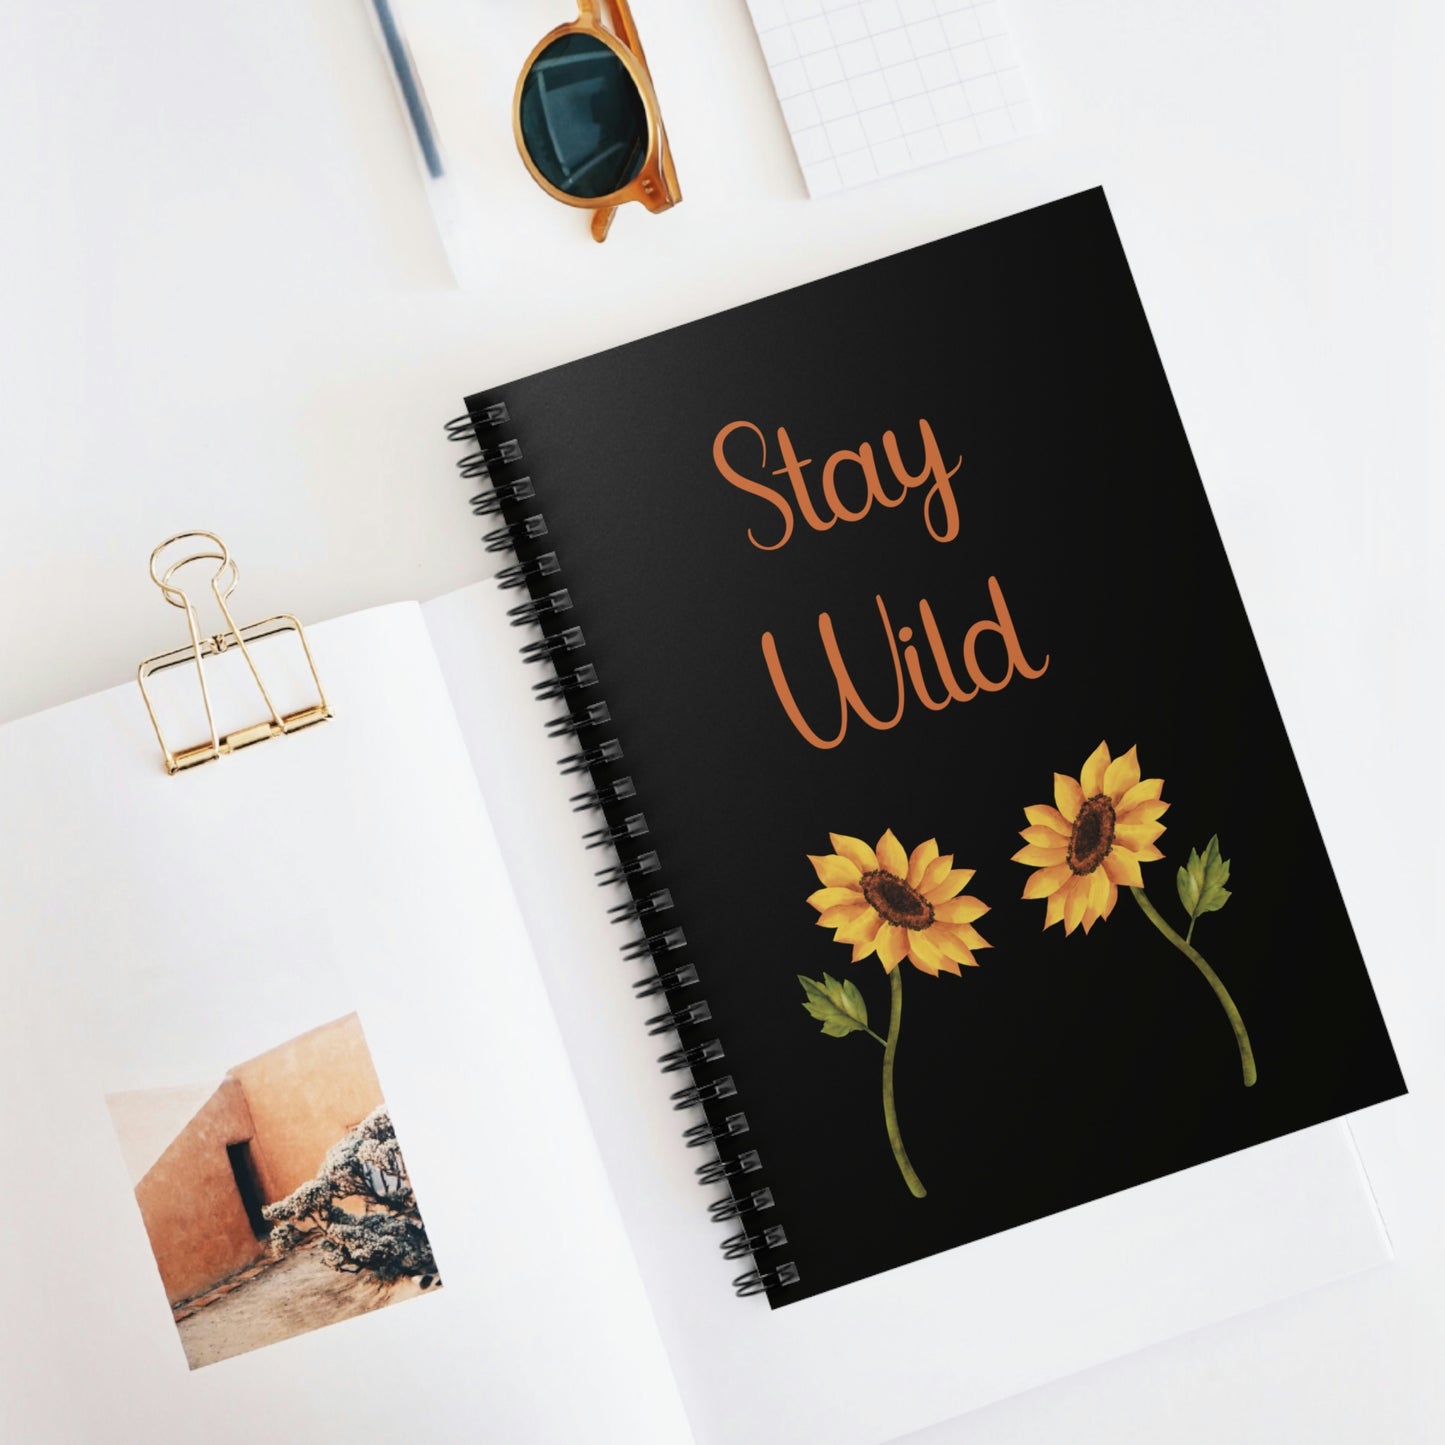 Stay Wild Spiral Notebook